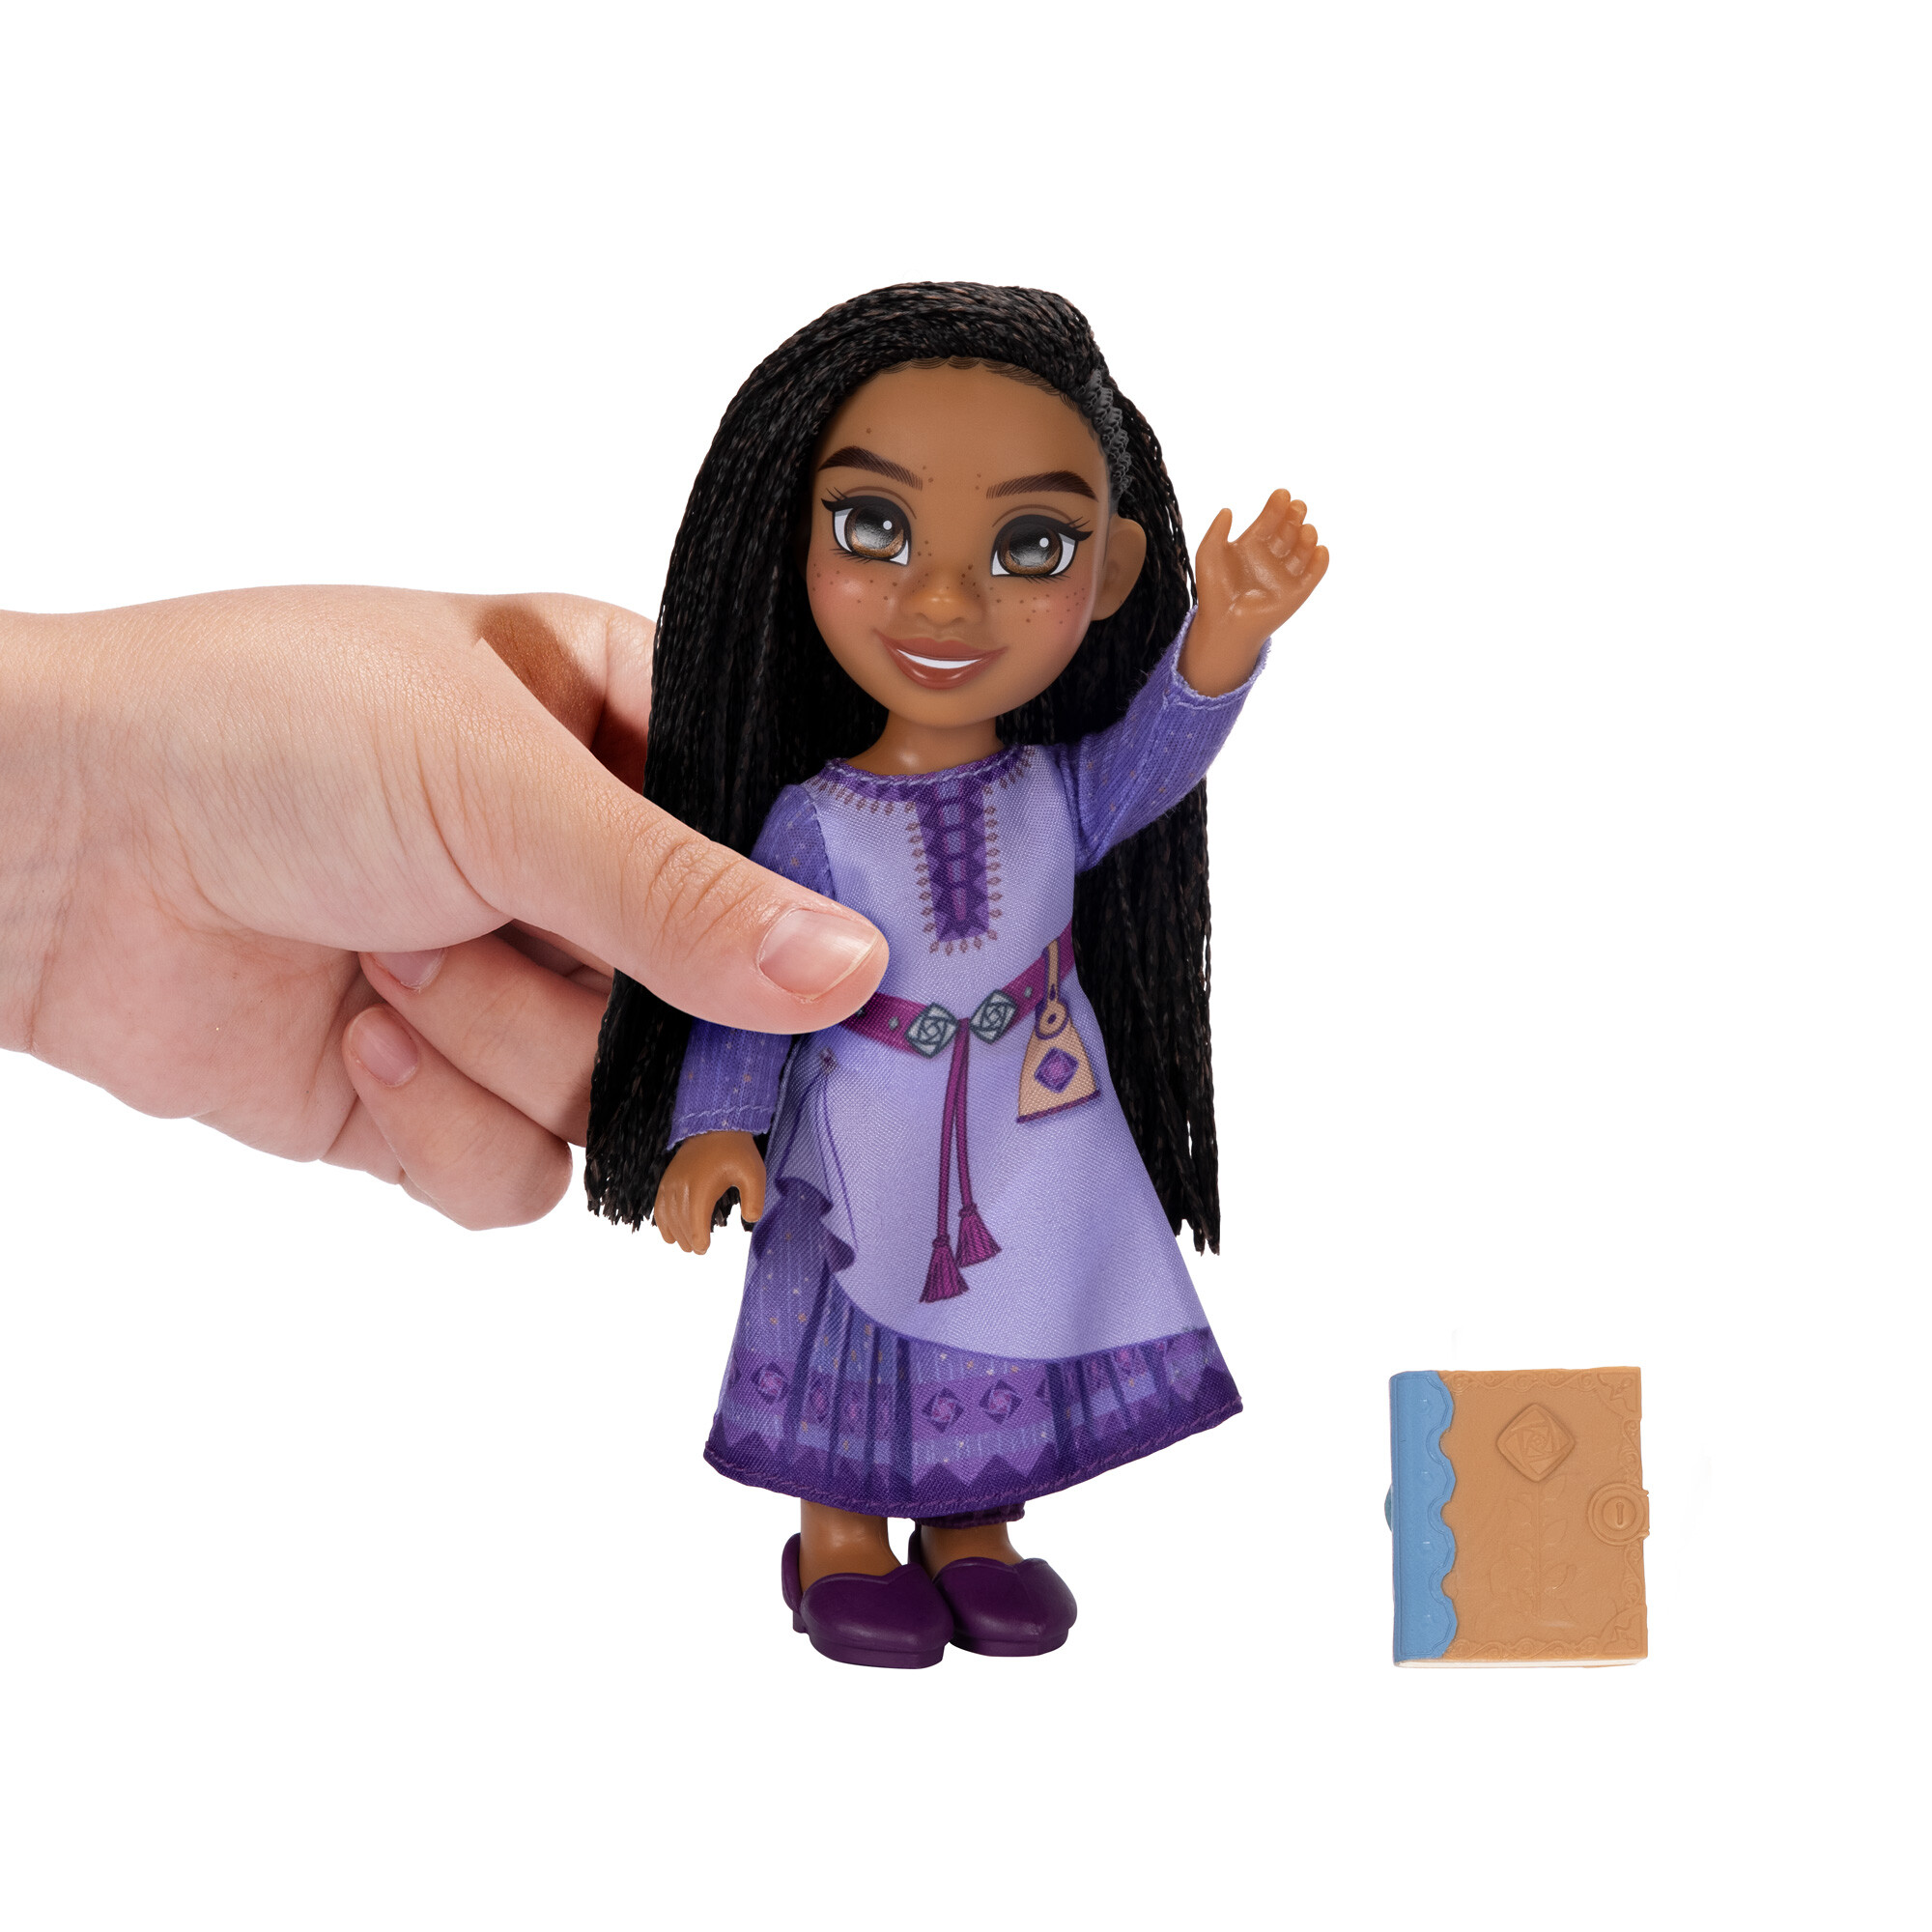 Disney wish - bambola di asha da 15cm articolata ed estremamente dettagliata - DISNEY PRINCESS, WISH